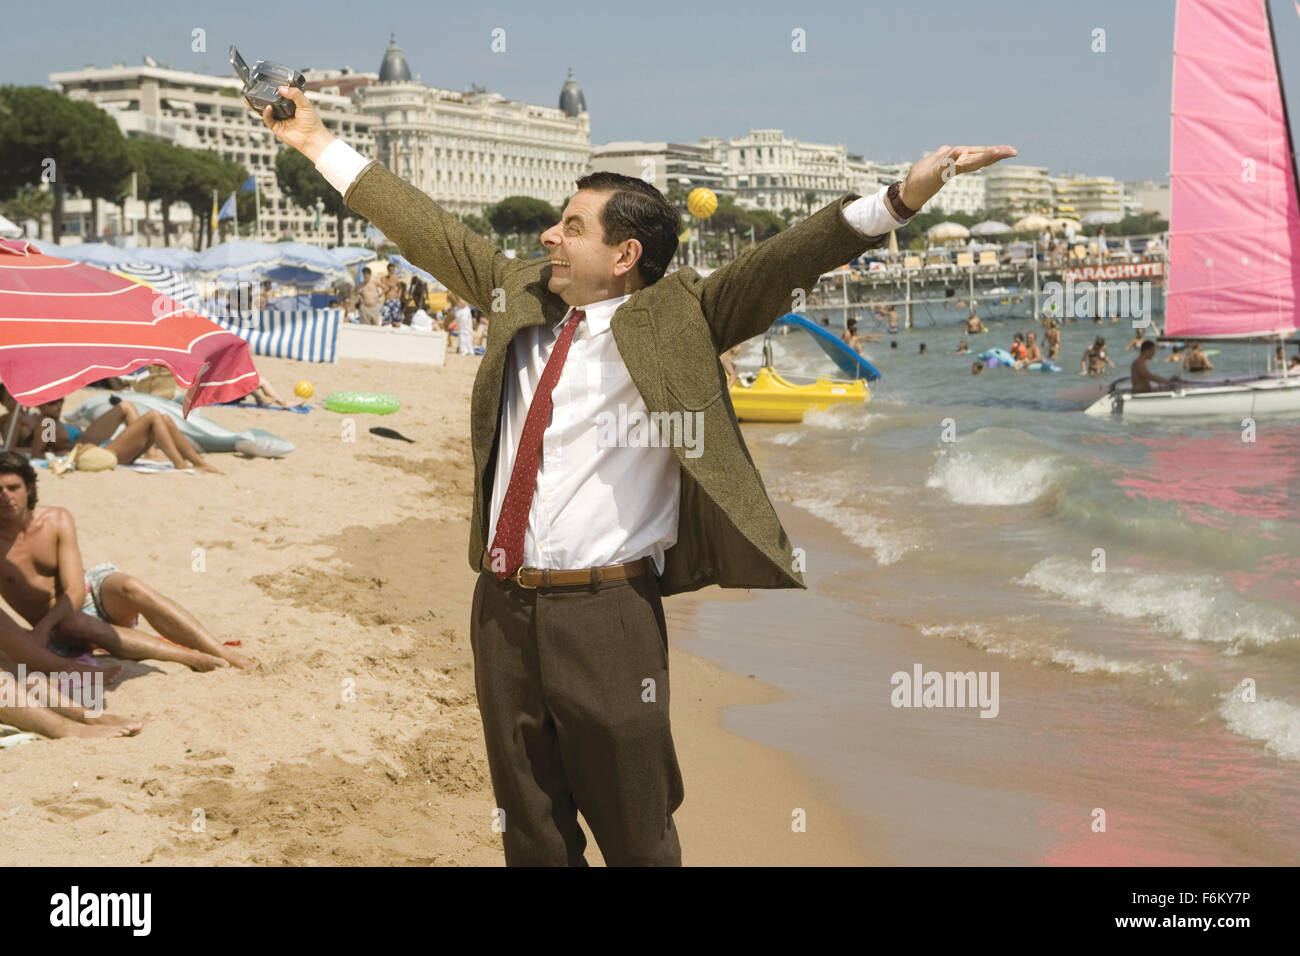 Erscheinungsdatum: September, 2007. FILMTITEL: Mr. Bean macht Ferien. STUDIO: Universal Pictures. PLOT: Mr. Bean kehrt zurück, aber nicht für lange wie er auf seinen Reisen in den Süden von Frankreich wo Unglück und Chaos am Ende Bean sogar beginnen geht, hat seine Videotagebücher auf dem Cannes Film Festival. Im Bild: ROWAN ATKINSON als Mr. Bean. Stockfoto